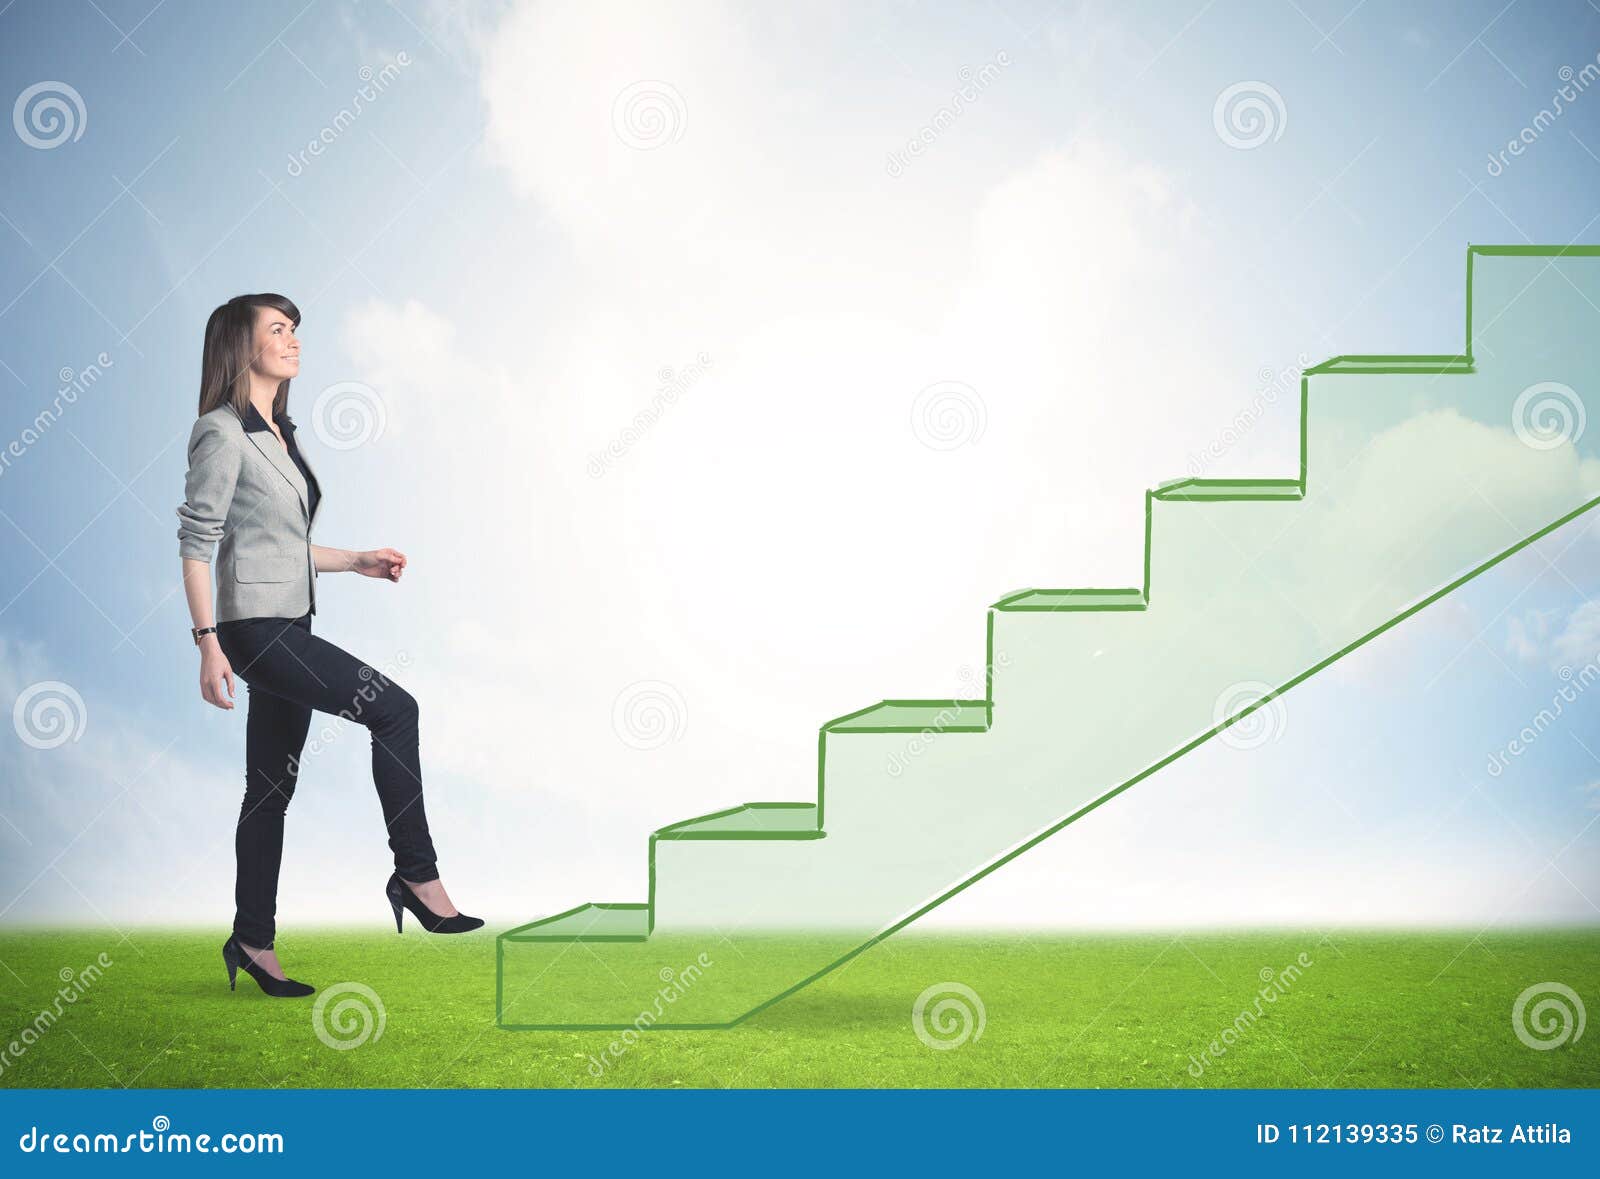 Ступеньки к успеху 2024. Человек на ступеньках. Человек по ступенькам вверх. Лестница вверх. Человек поднимается по карьерной лестнице.